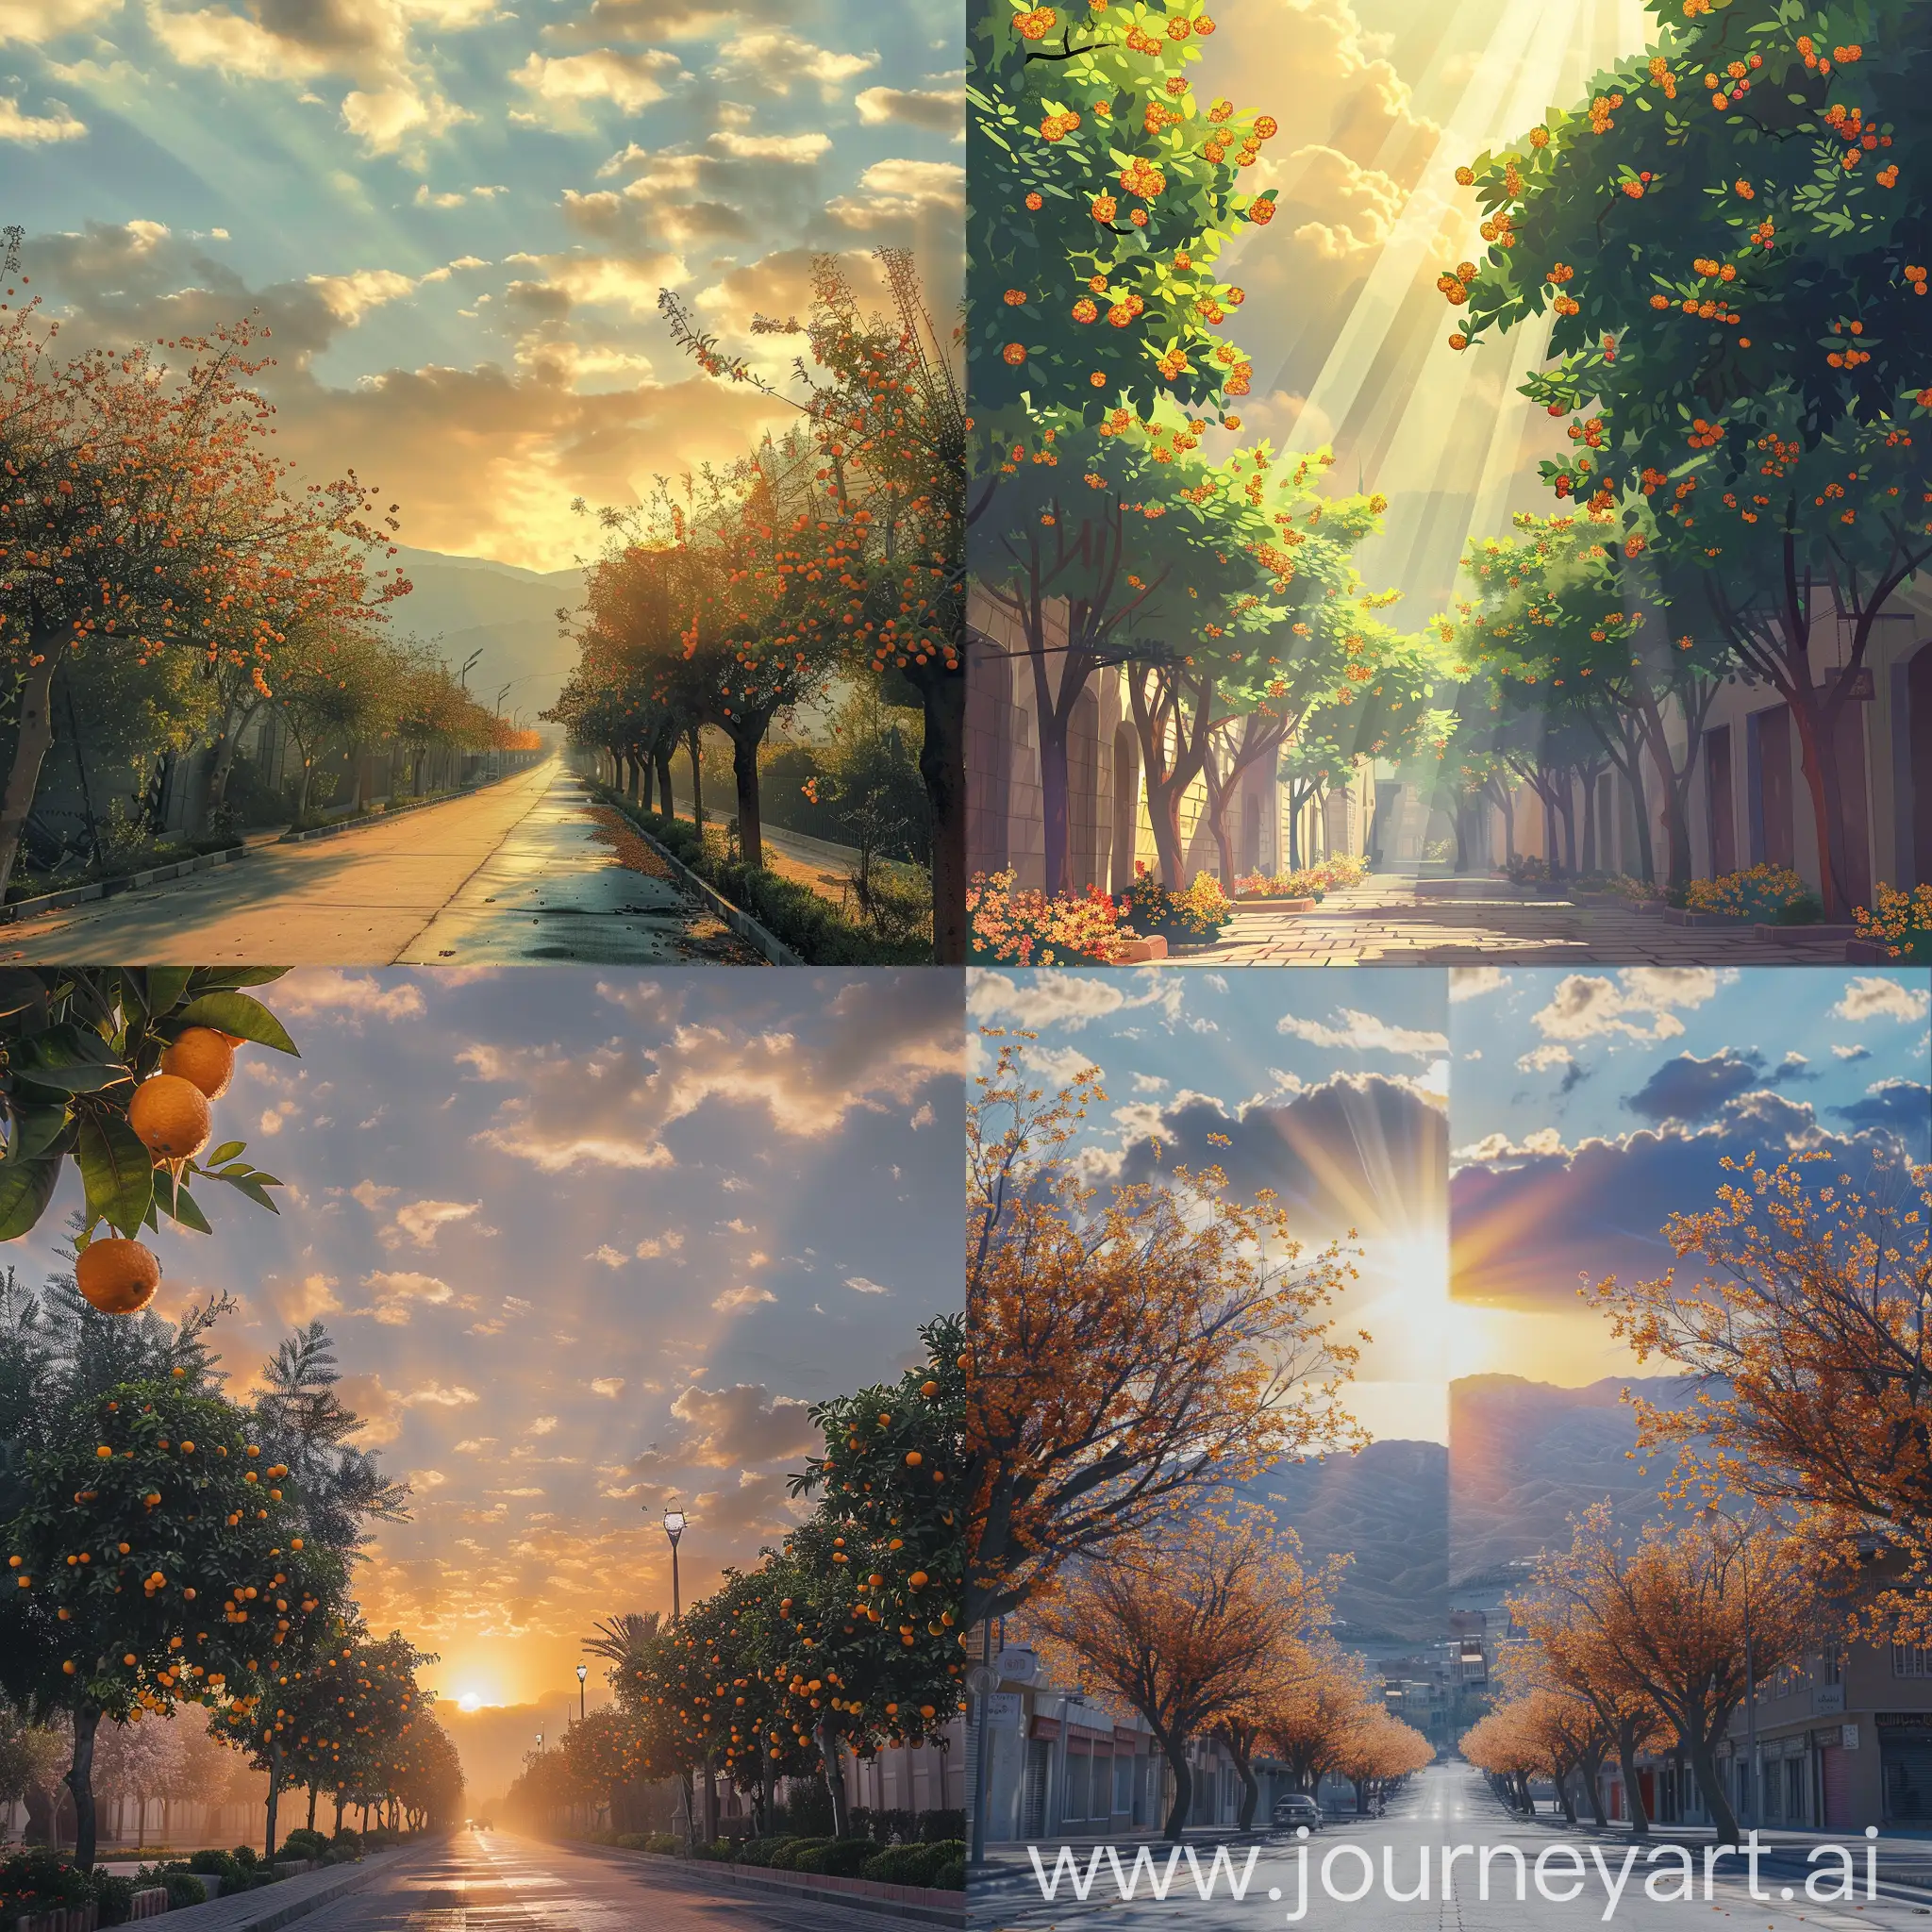 سلام یک بنر برام طراحی کن از اسمان یک صبح با نور افتاب ملایم که پایین این بنر درخت های بهار نارنج در خیابان های شیراز باشد 
